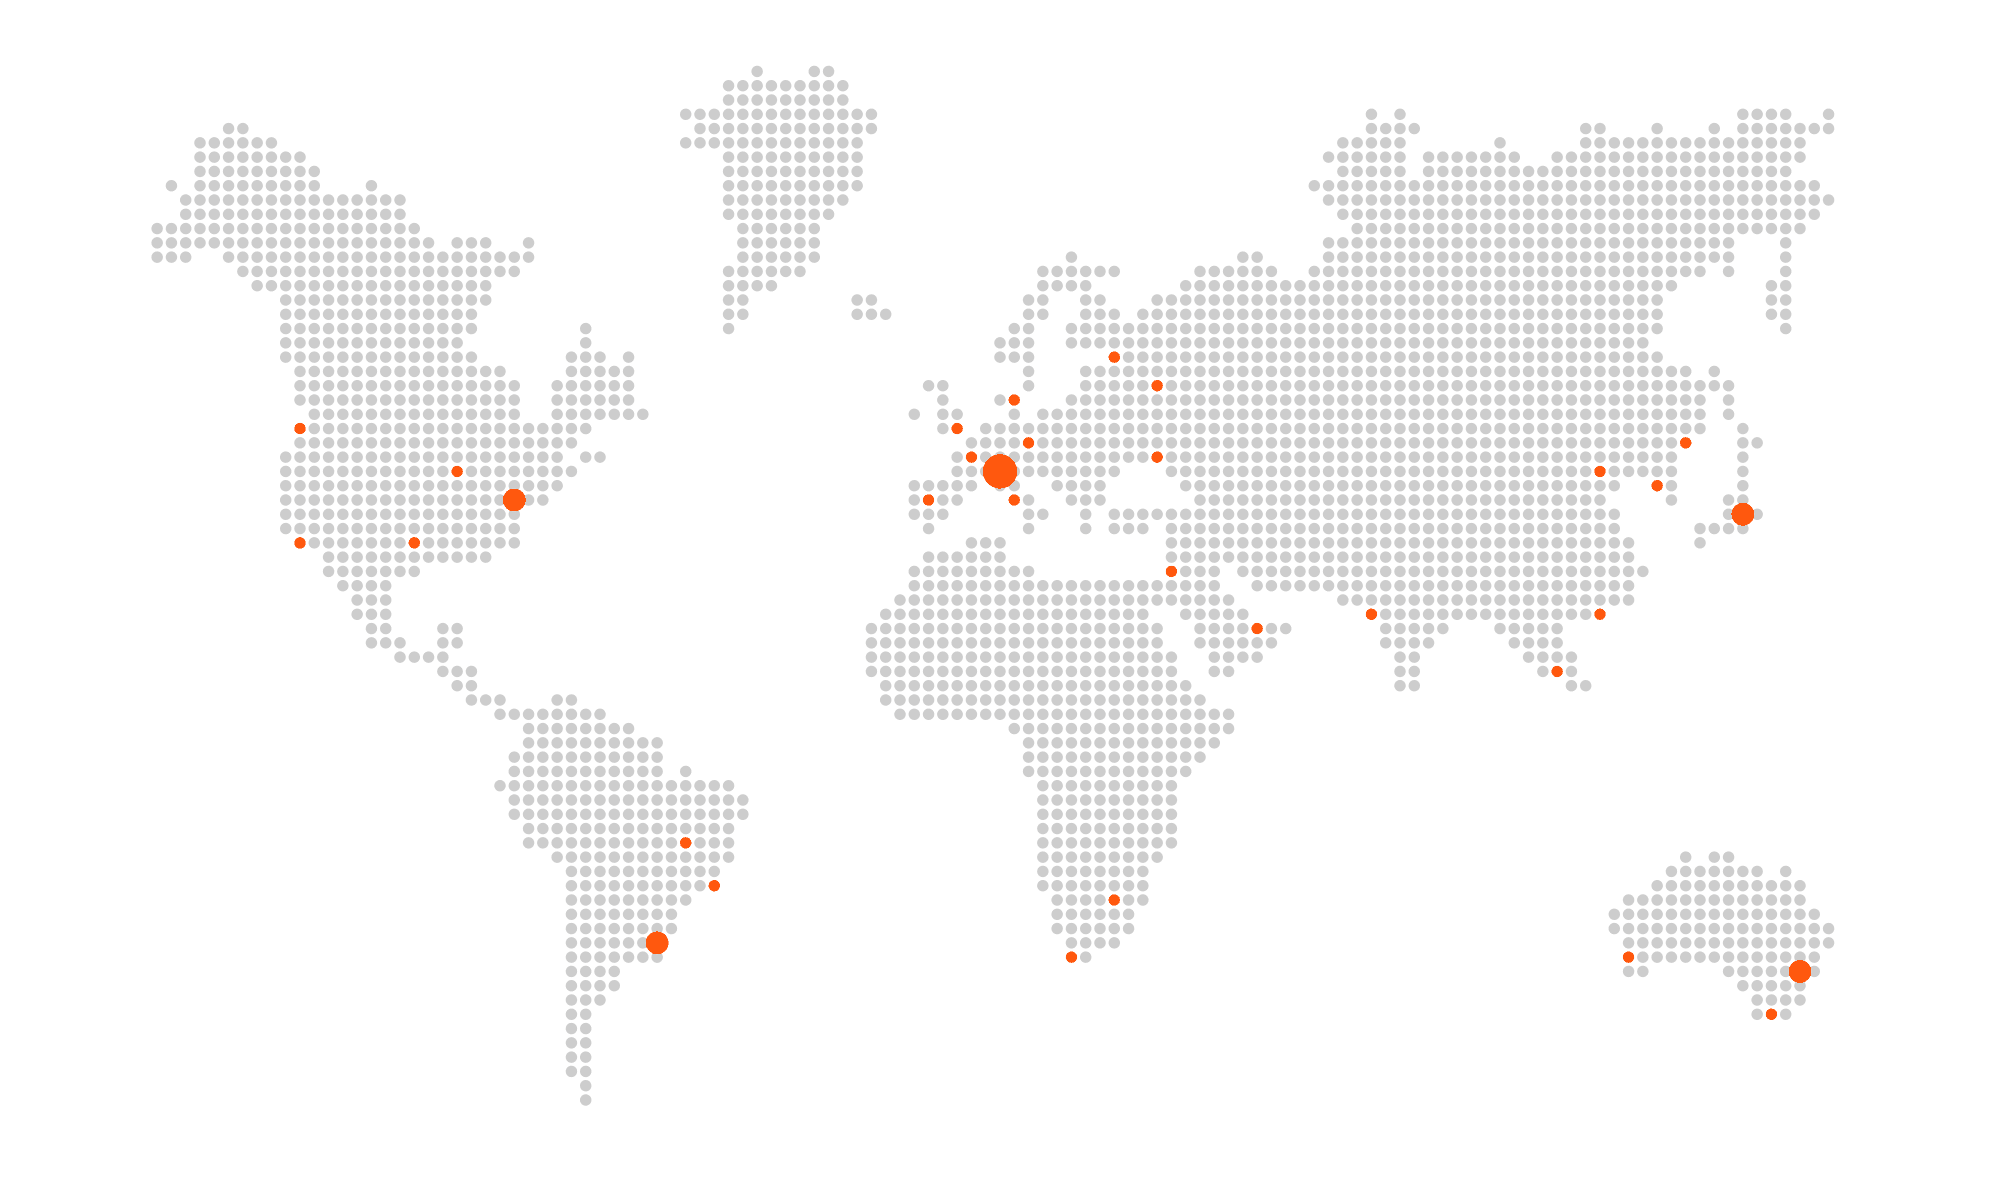 immagine mappa mondiale con network intoway